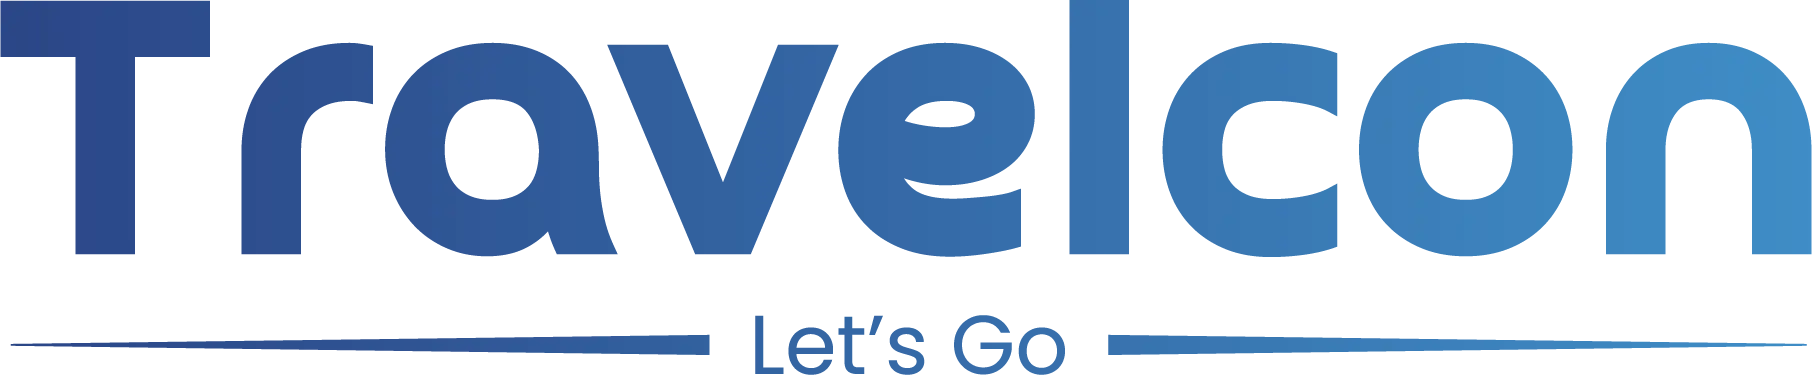 travelcon logo